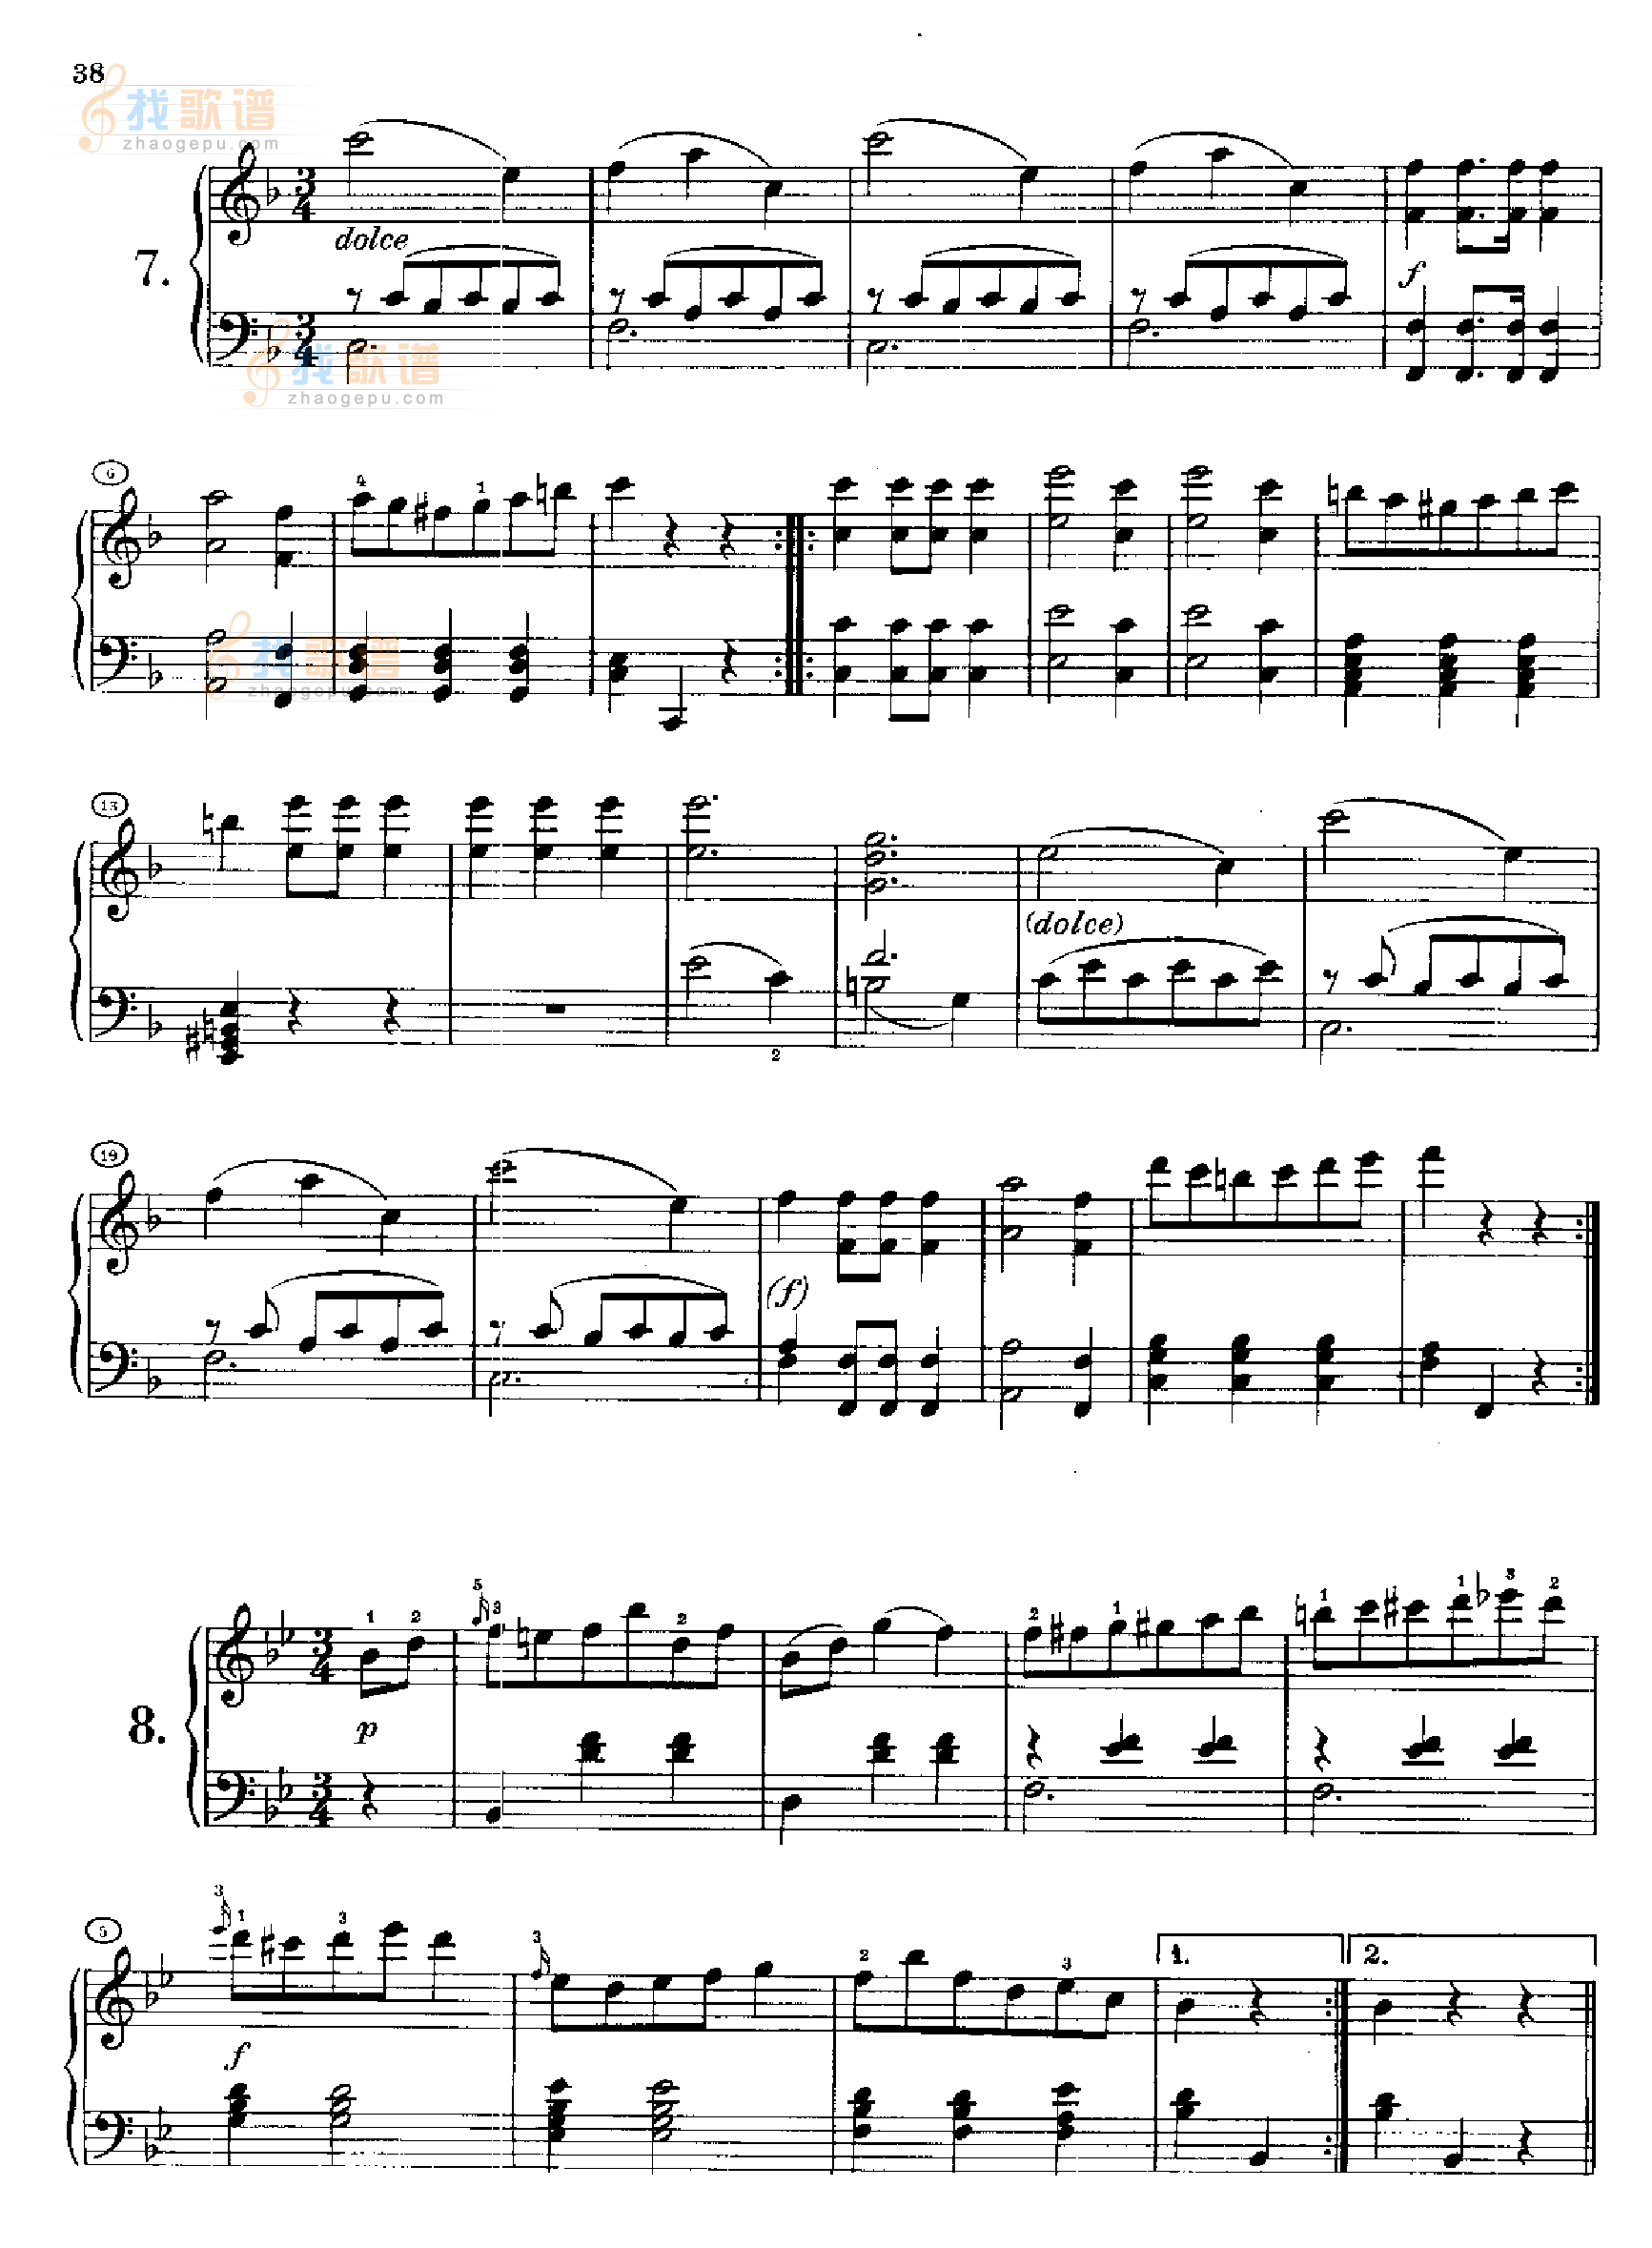 12首维也纳德意志舞曲(约1812年创作)